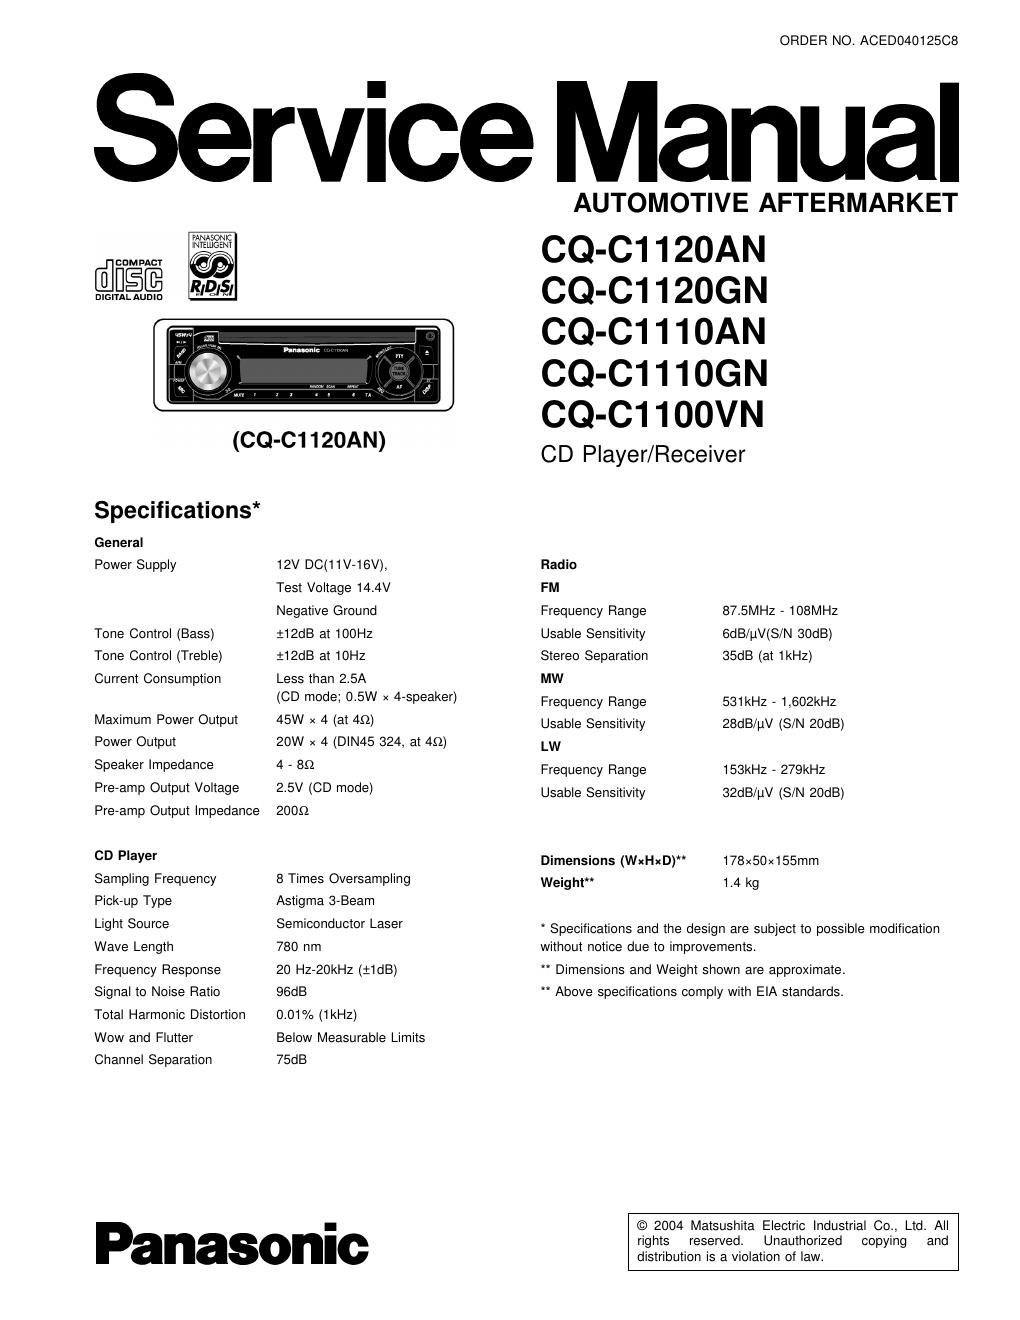 panasonic cq c 1110 an service manual